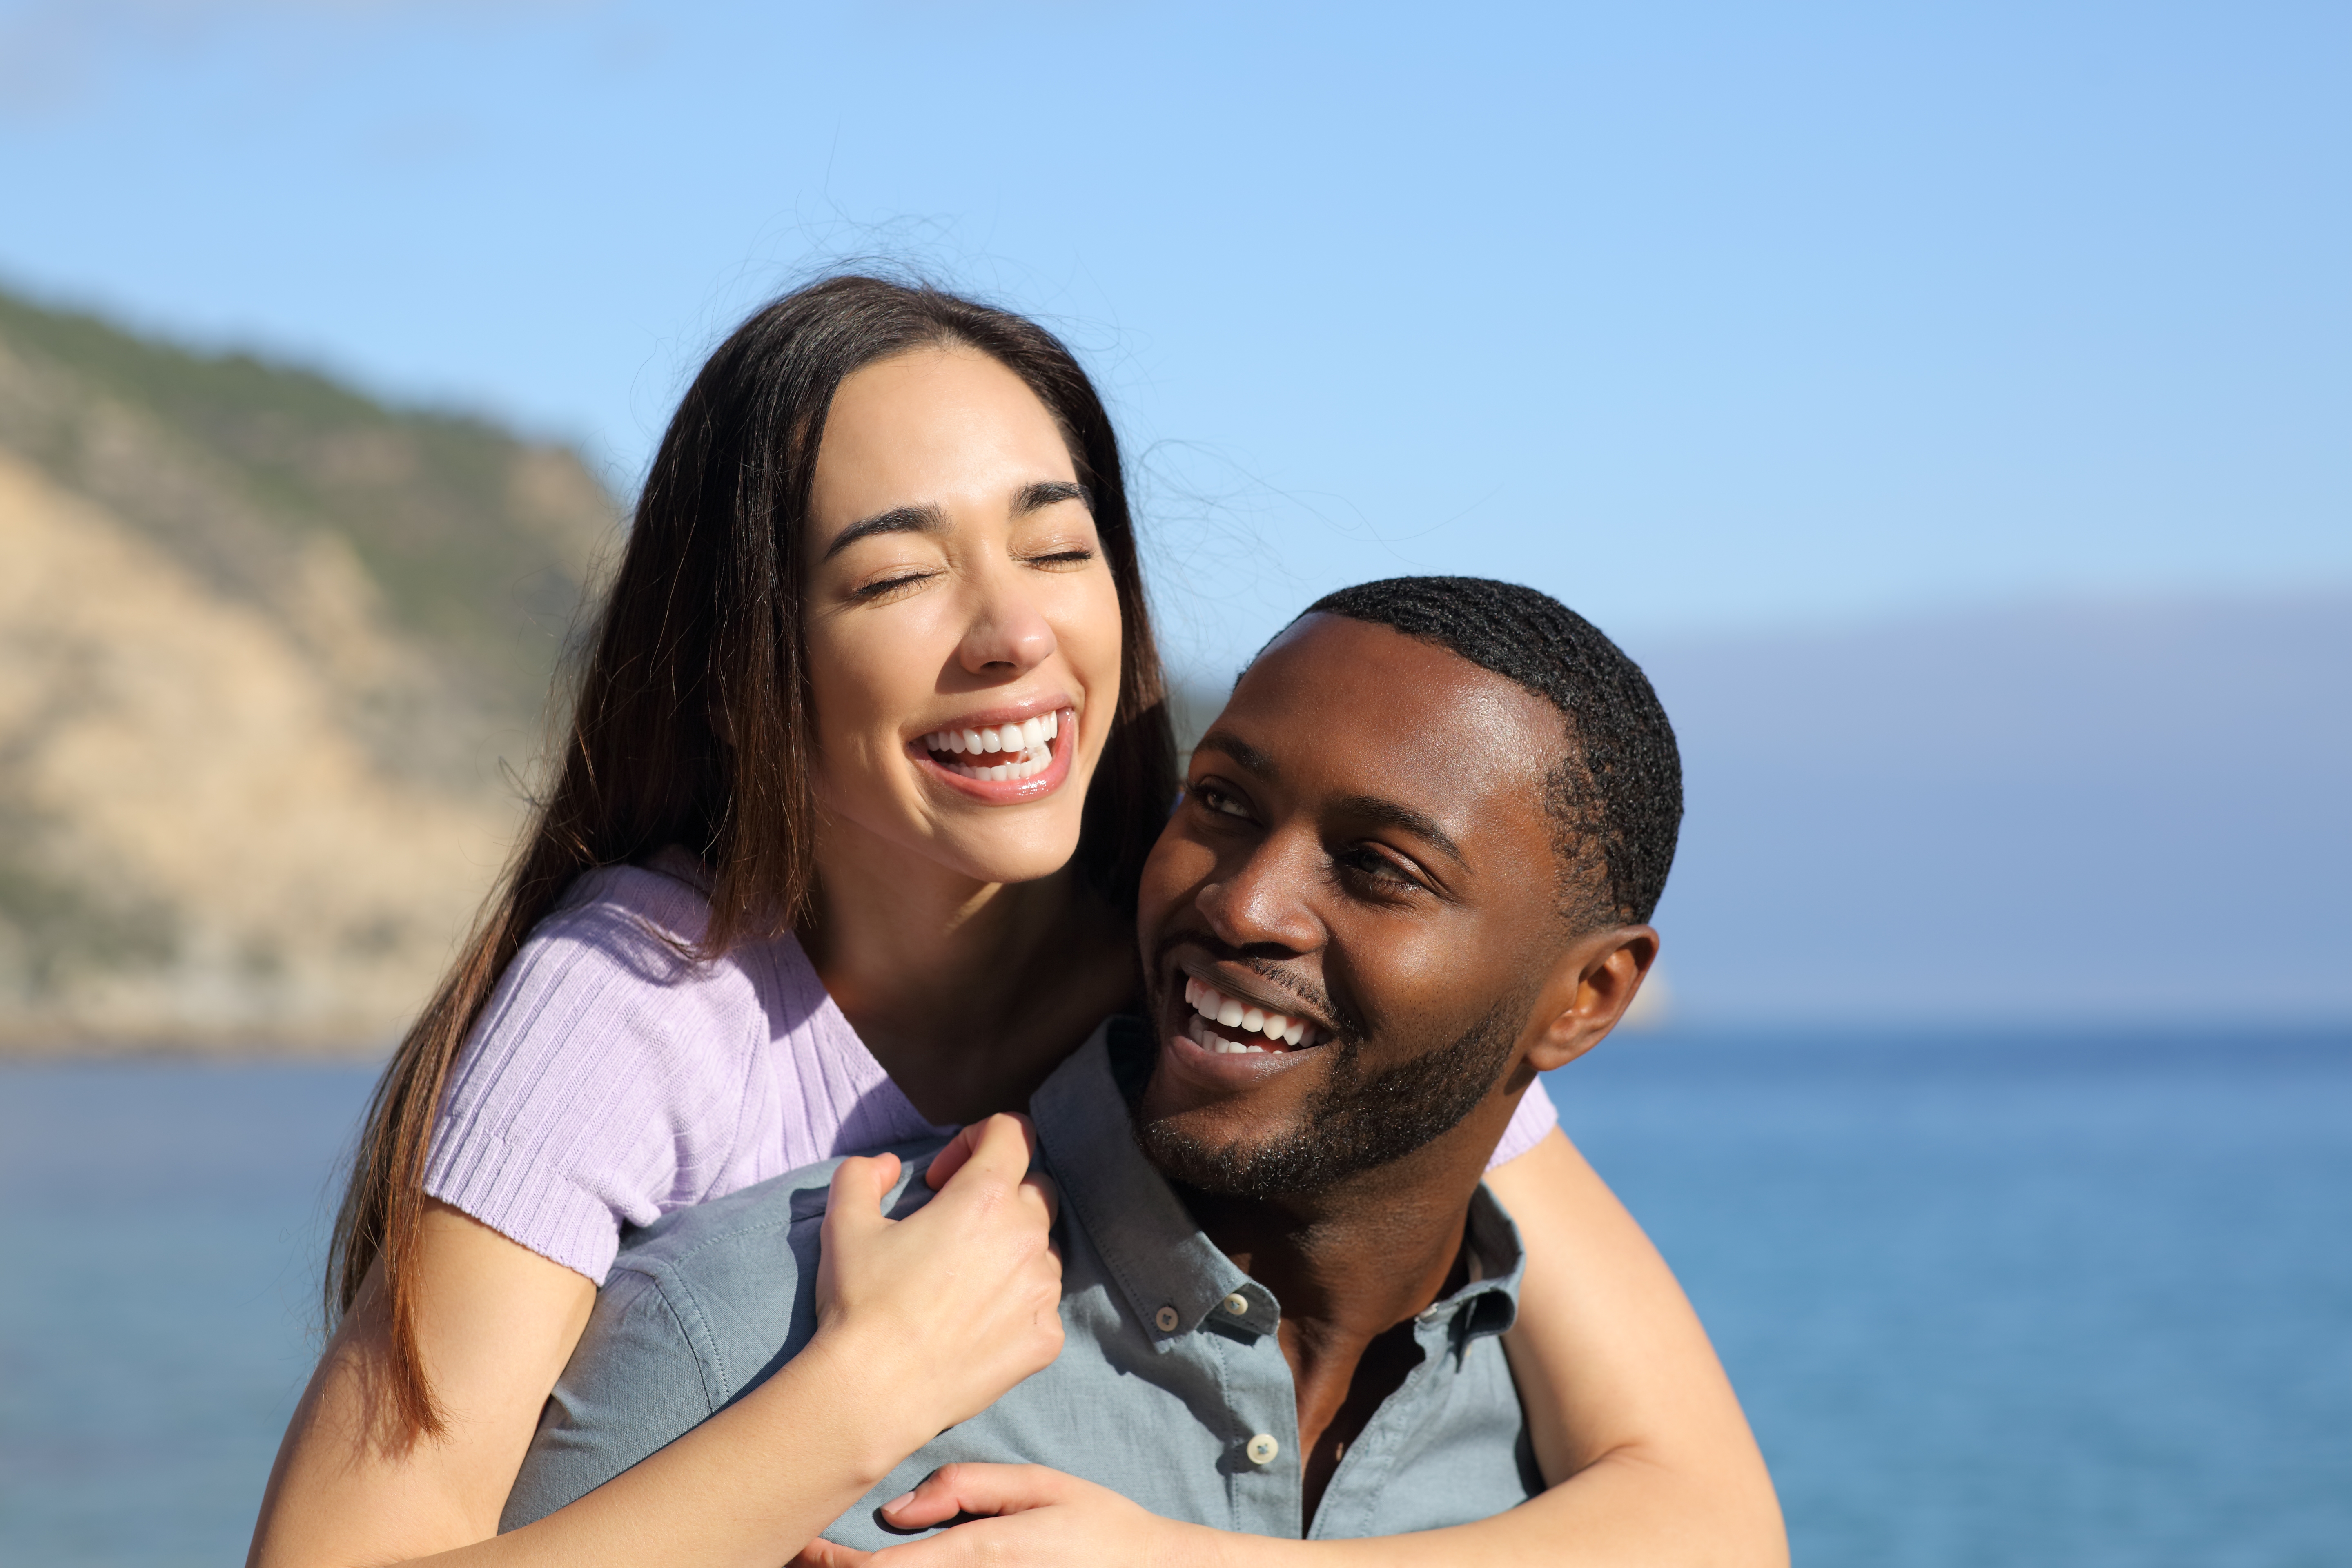 Un couple interracial heureux est photographié sur la plage | Source : Shutterstock